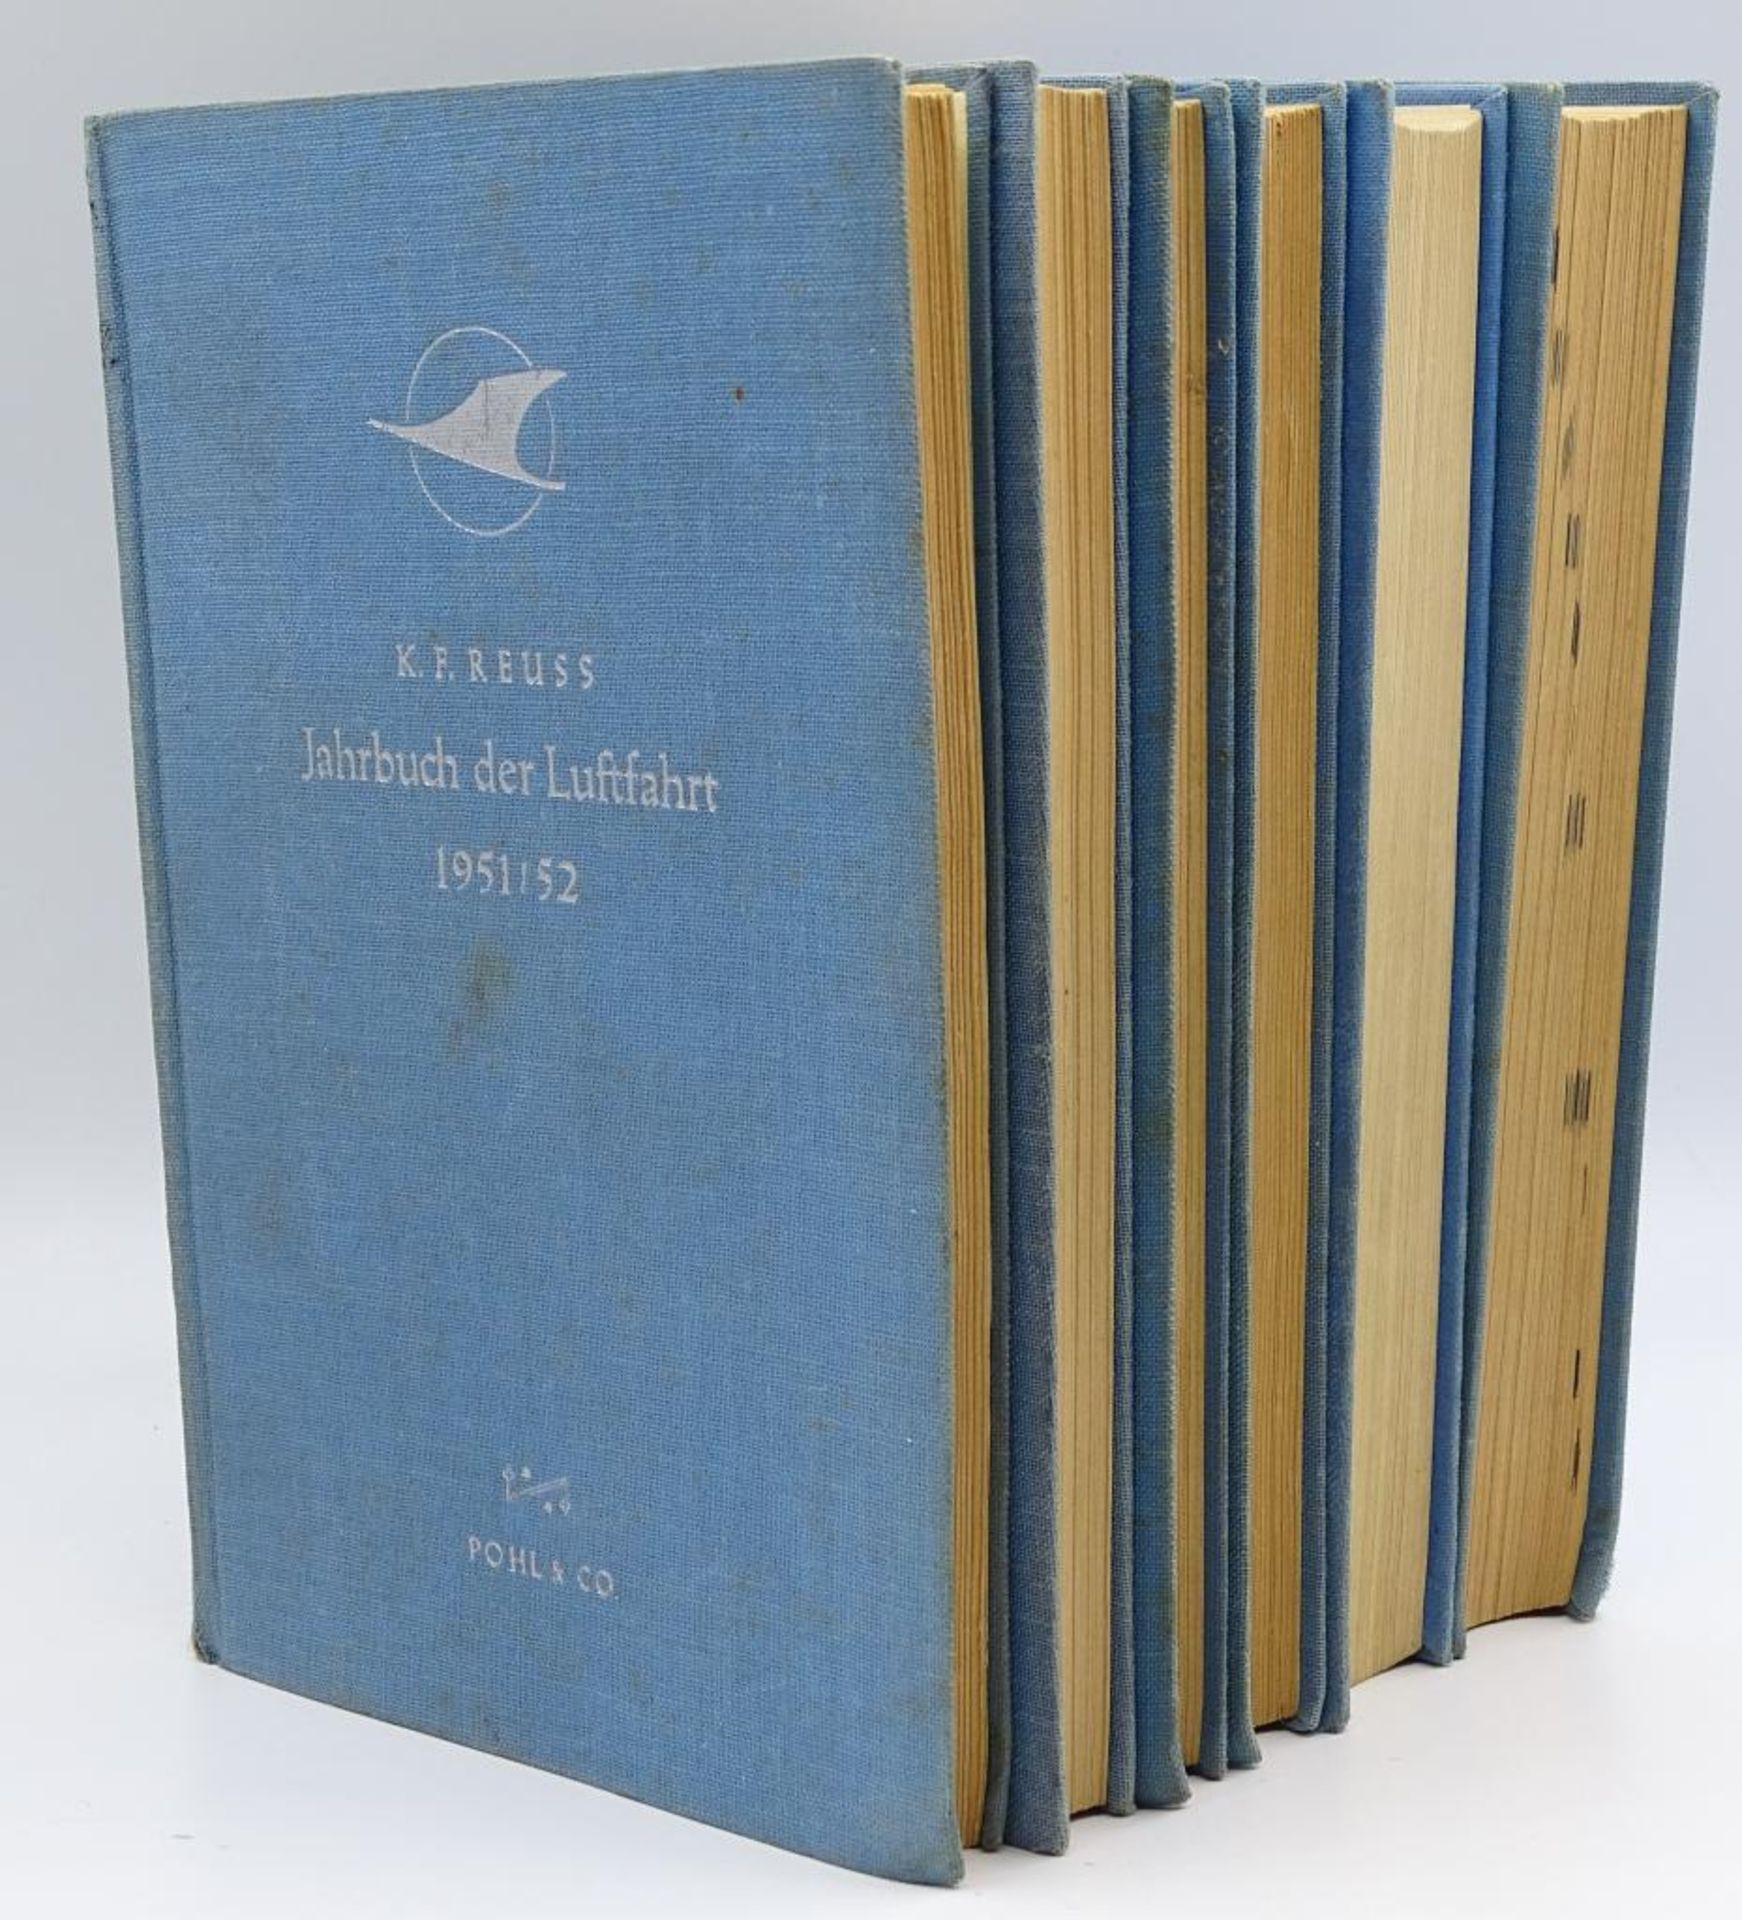 6x Jahrbücher der Luftfahrt ,Pohl&Co,1951-5